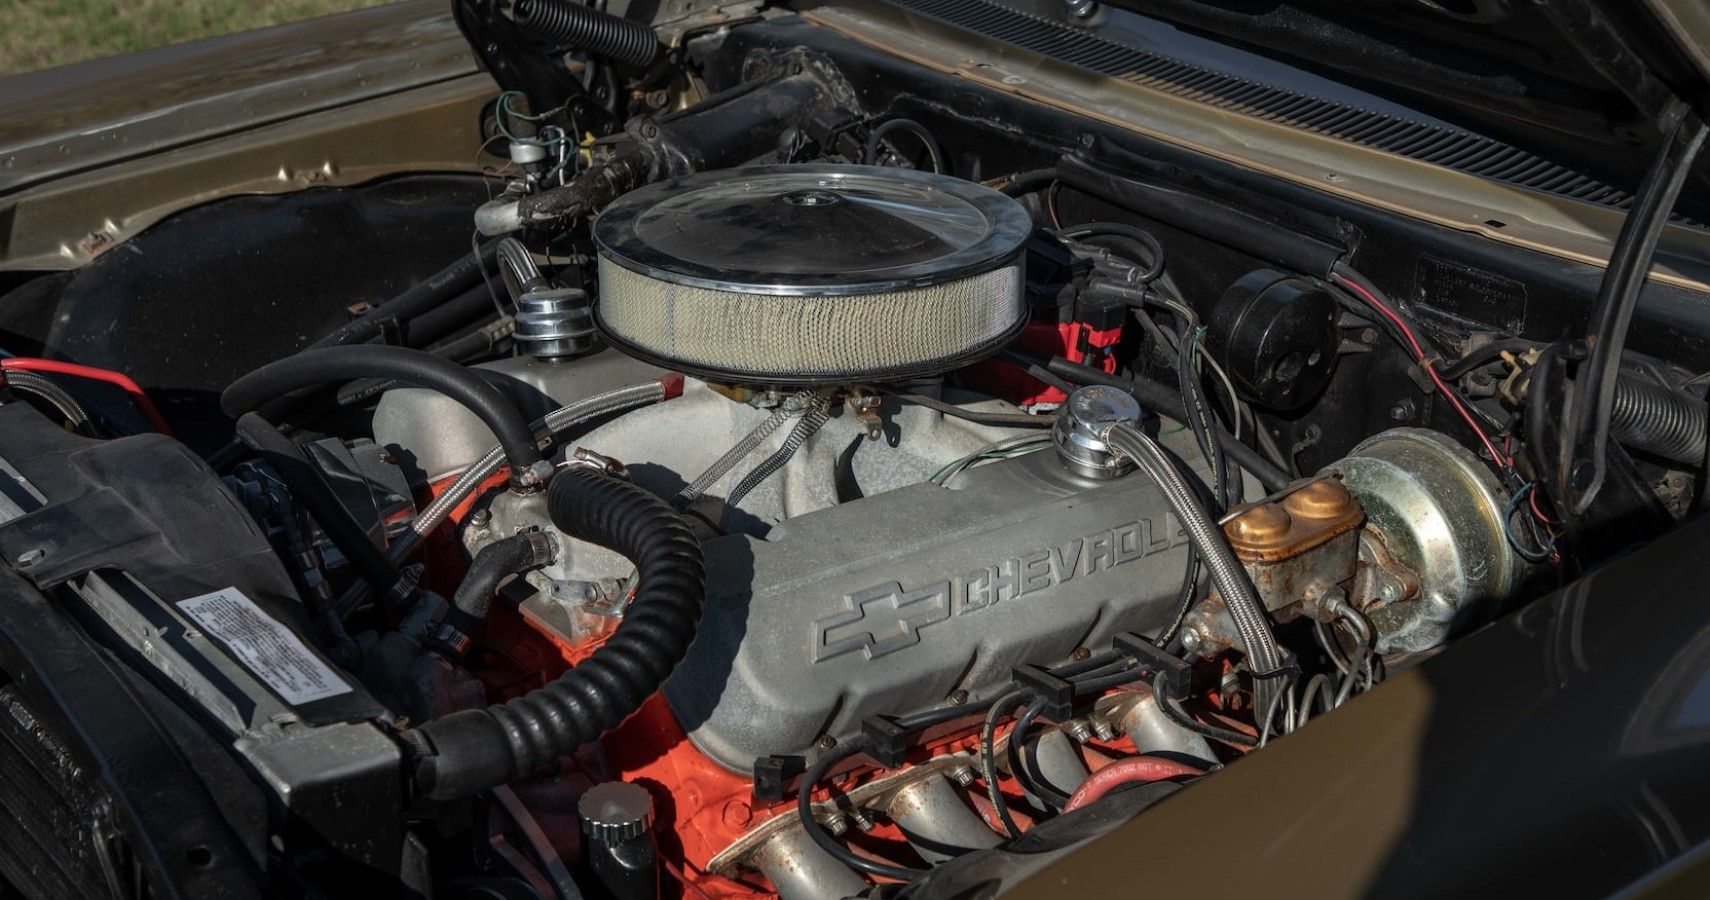 1967 Chevrolet Impala V8 engine bay view